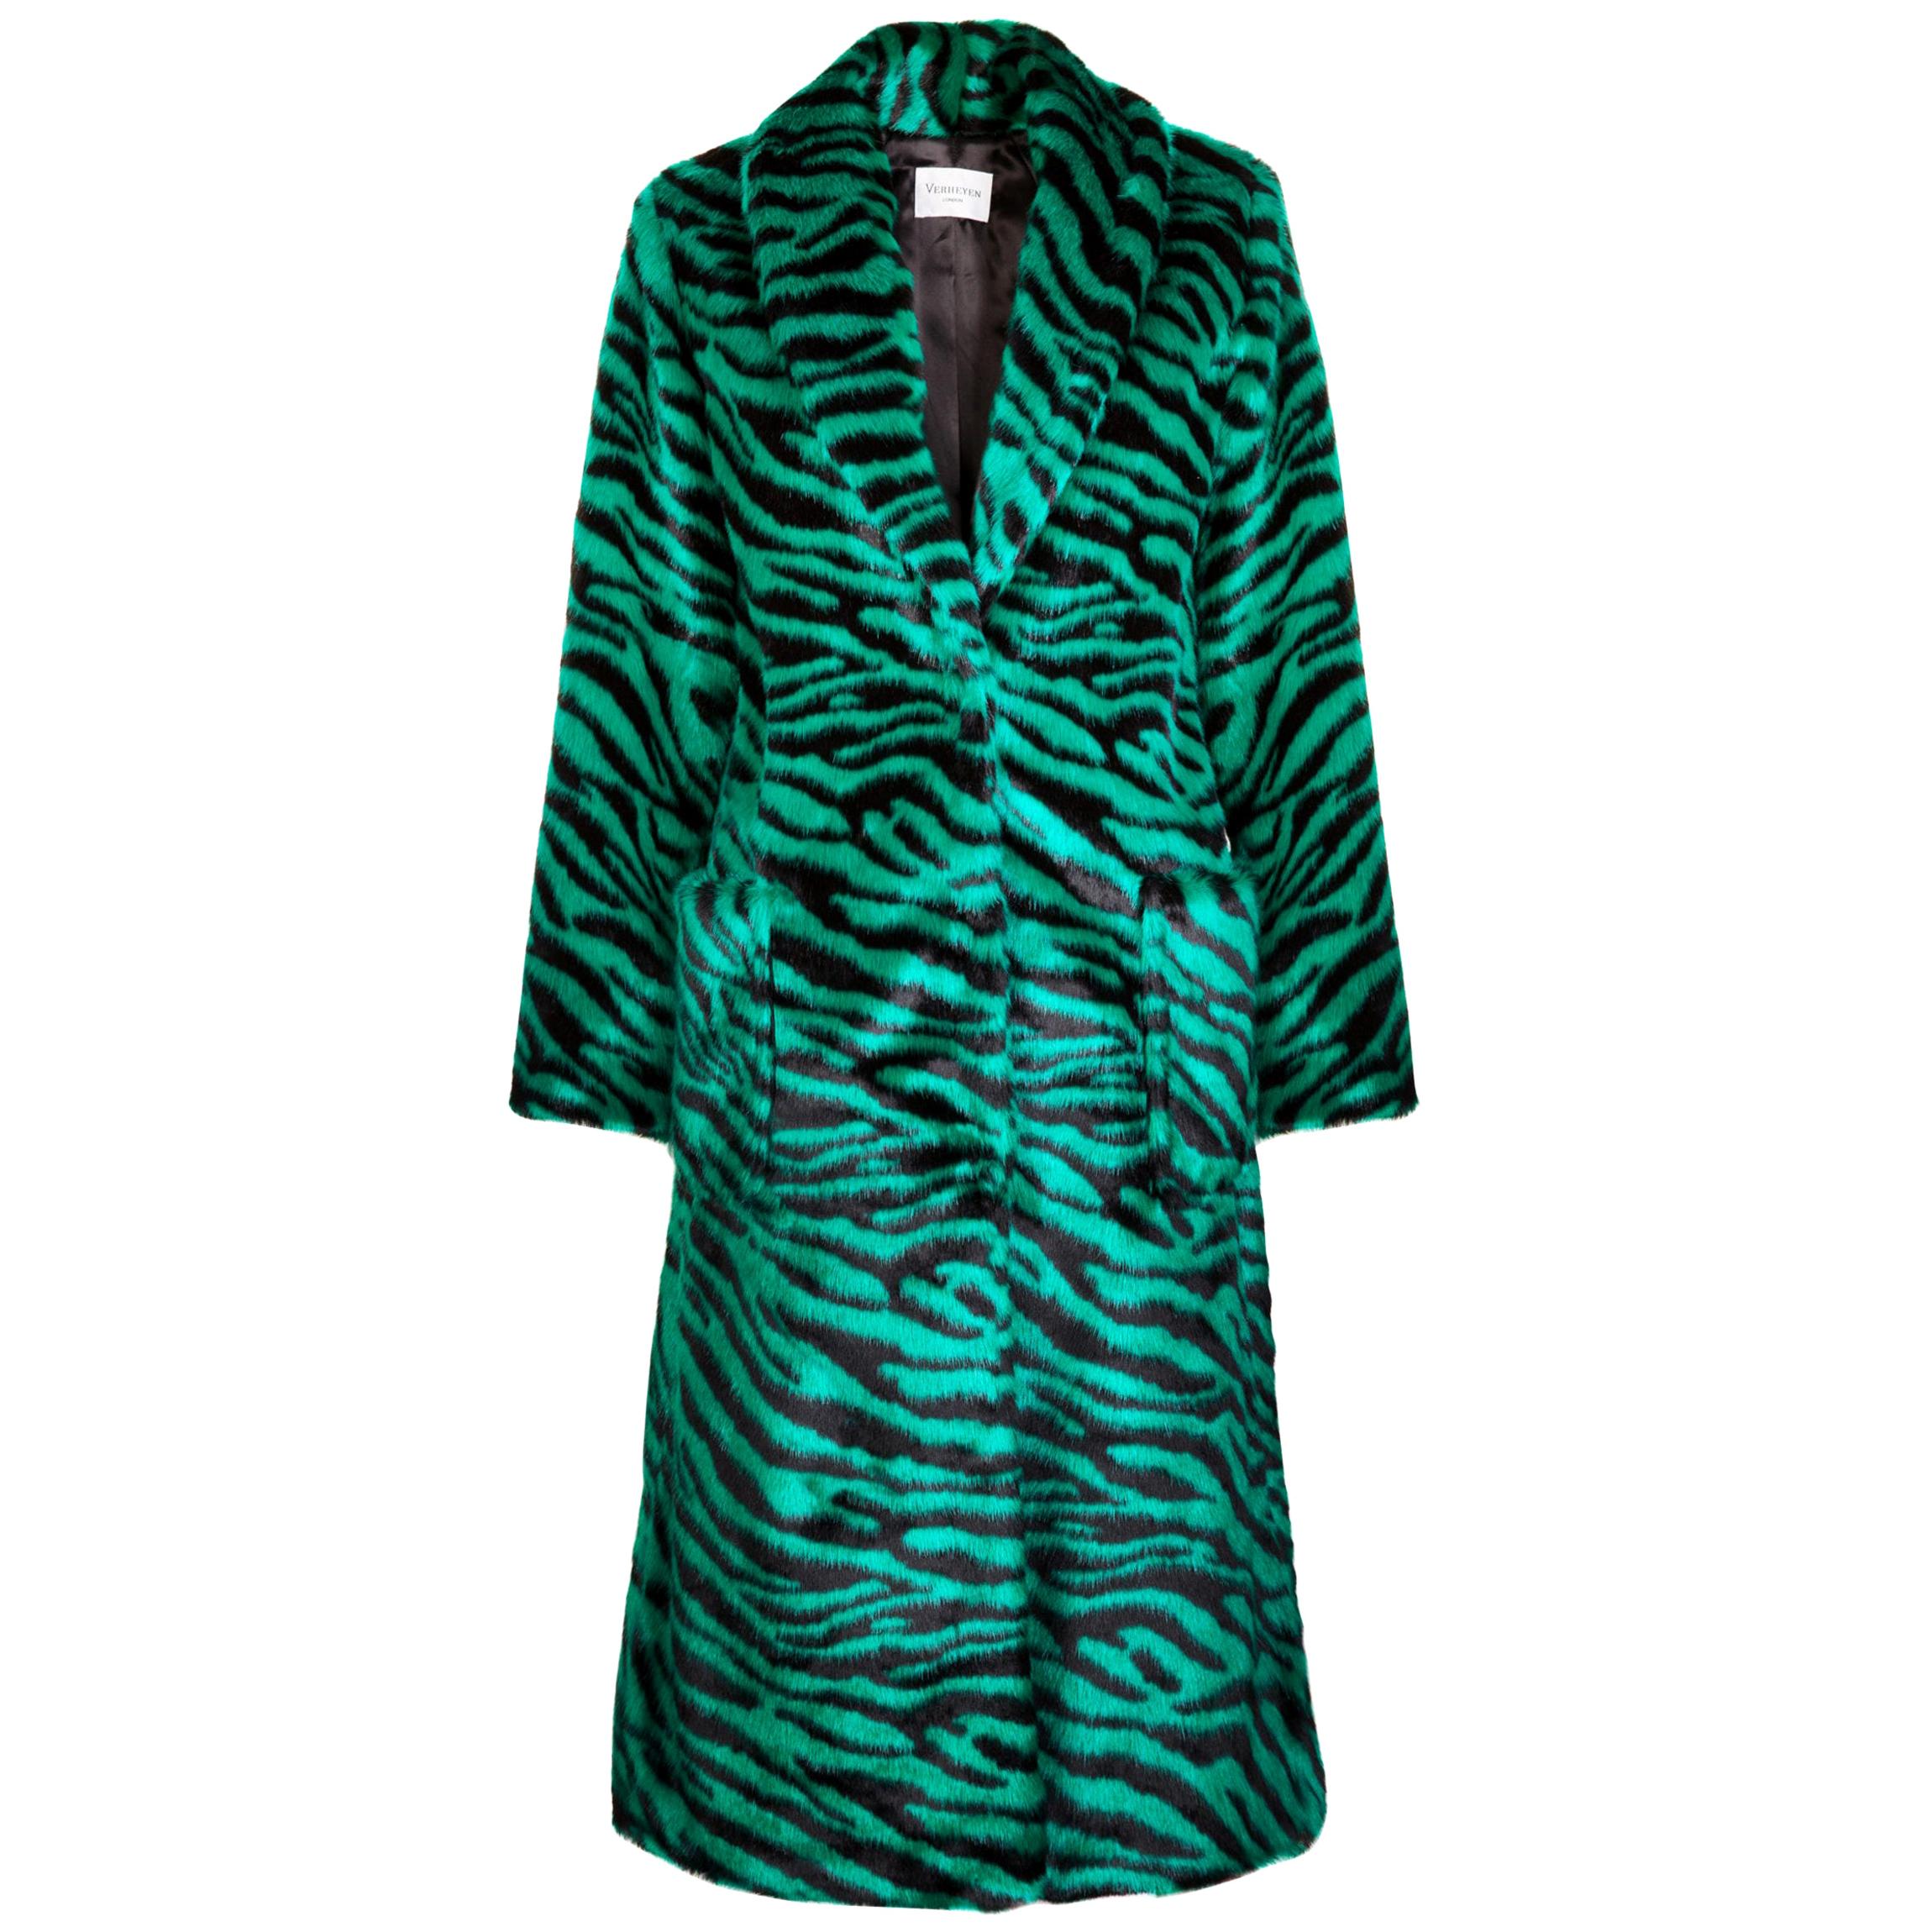 Verheyen London Esmeralda Faux Fur Coat in Emerald Green Zebra Print size uk 14 For Sale